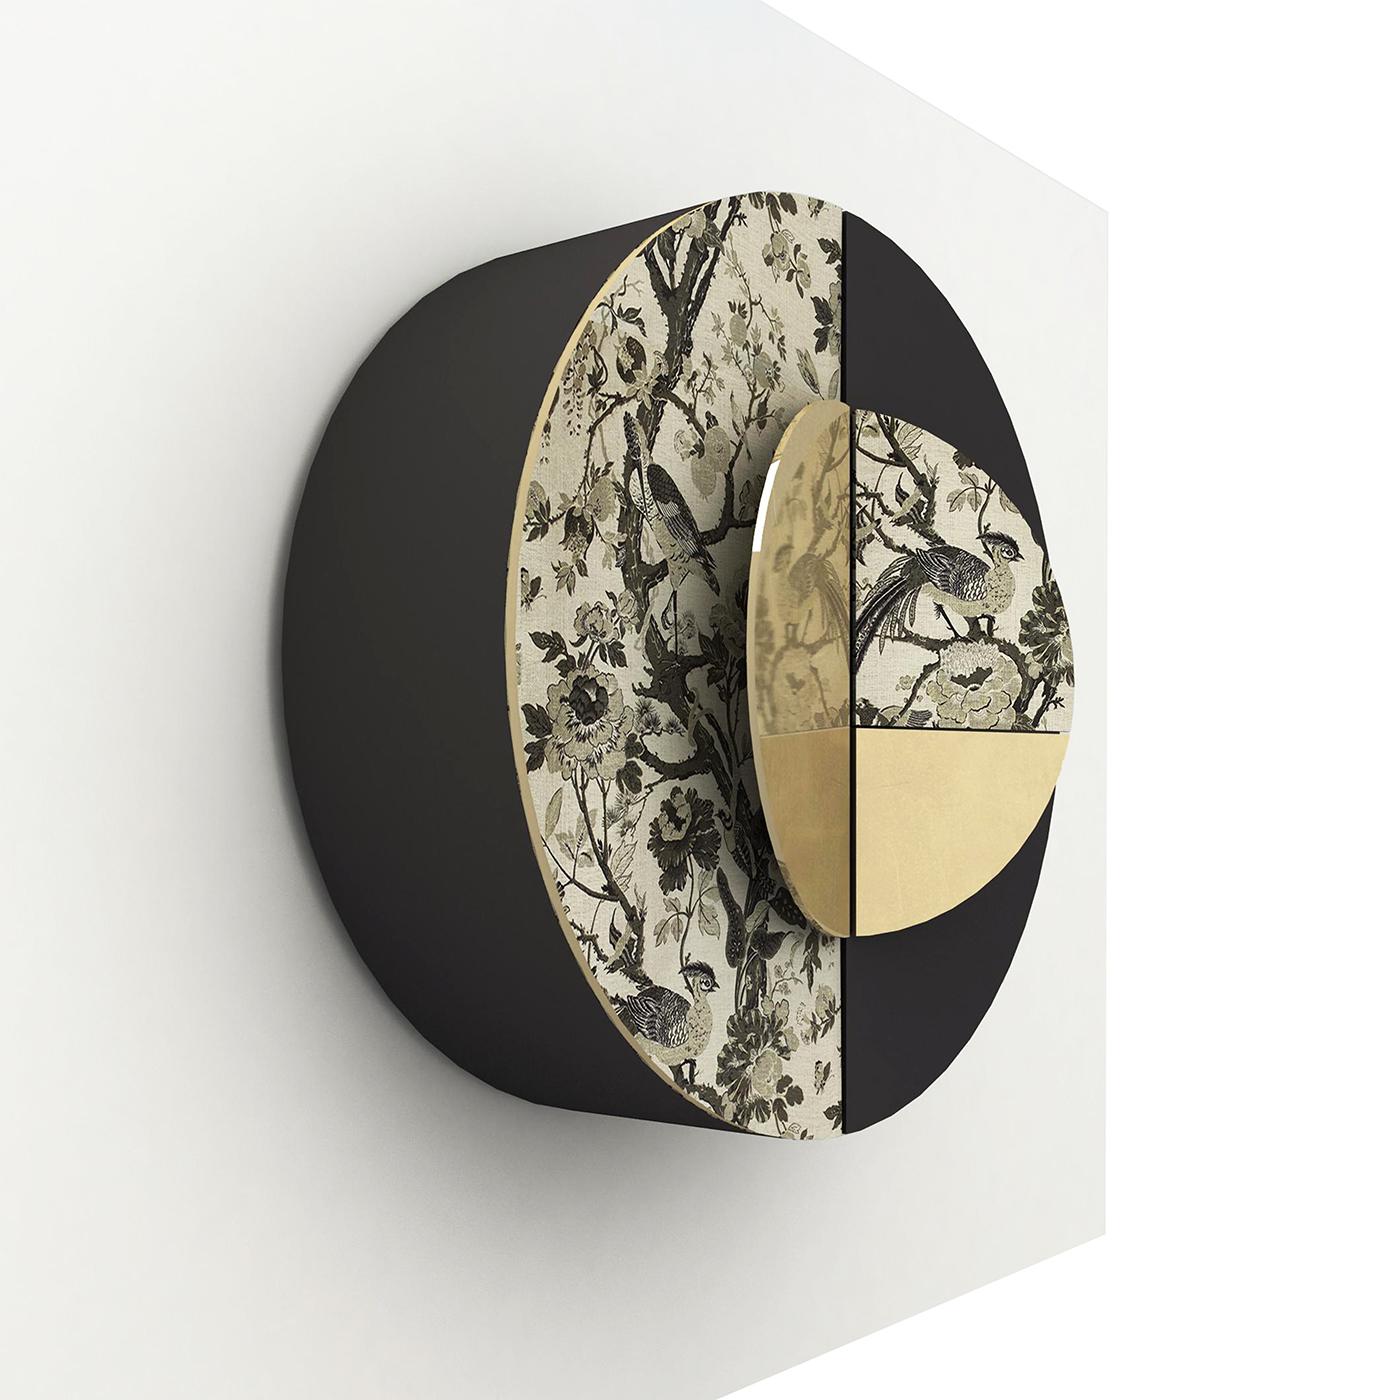 D'un design élégant et contemporain, cette armoire murale présente une silhouette ronde fabriquée à la main dans des matériaux raffinés. La structure en bois poli noir est partiellement tapissée d'un tissu oriental raffiné réalisé à la main sur des